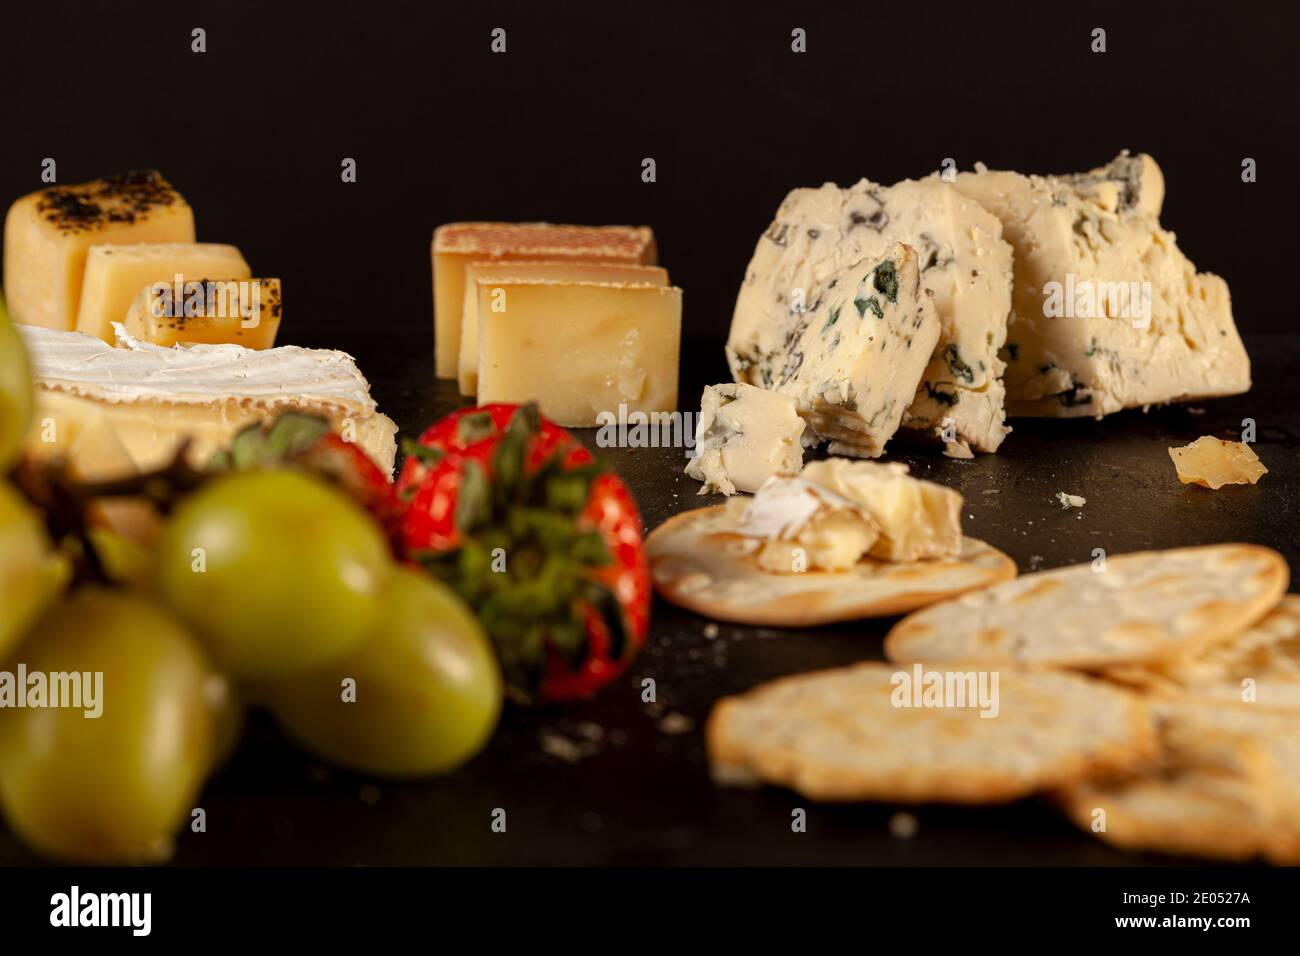 Une sélection de fromages artisanaux français, italiens et suisses sur plateau de fromages noirs servis avec des craquelins et des fruits (raisins et paille) Banque D'Images